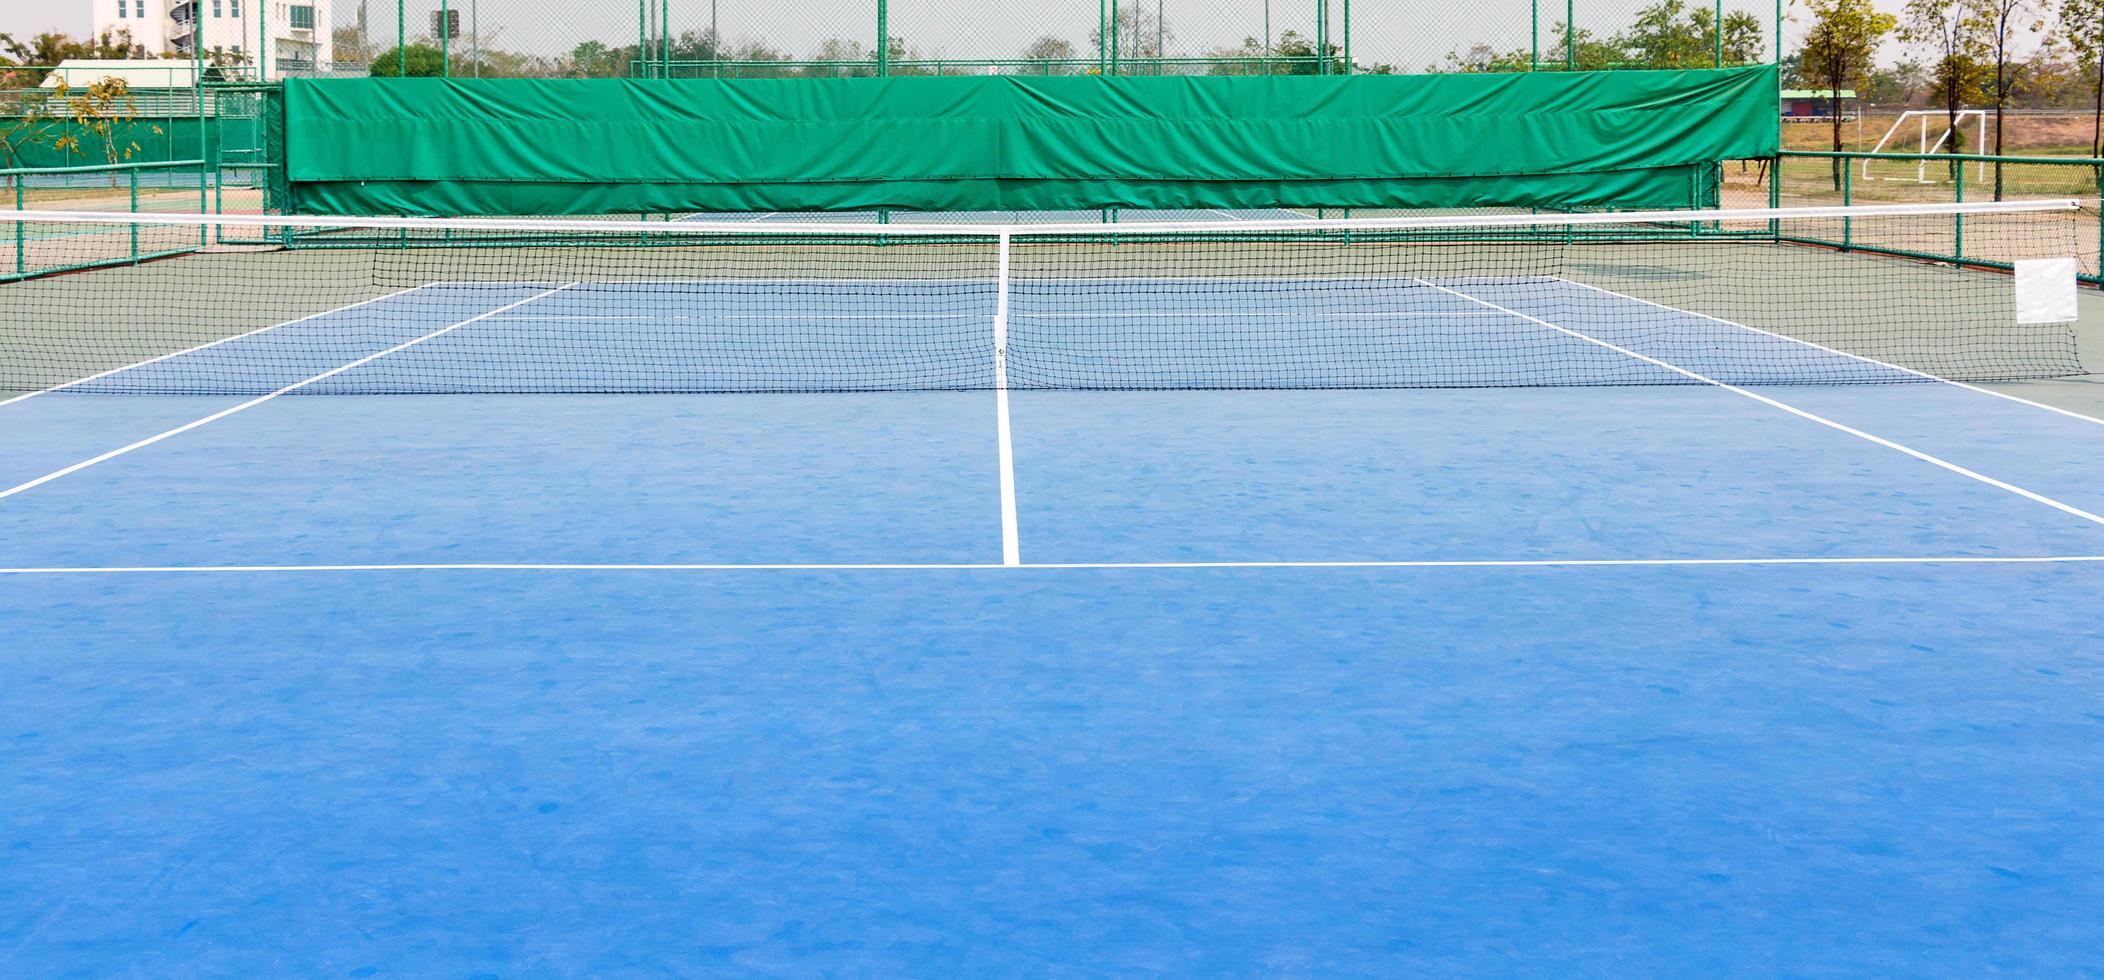 blå tennisbana foto